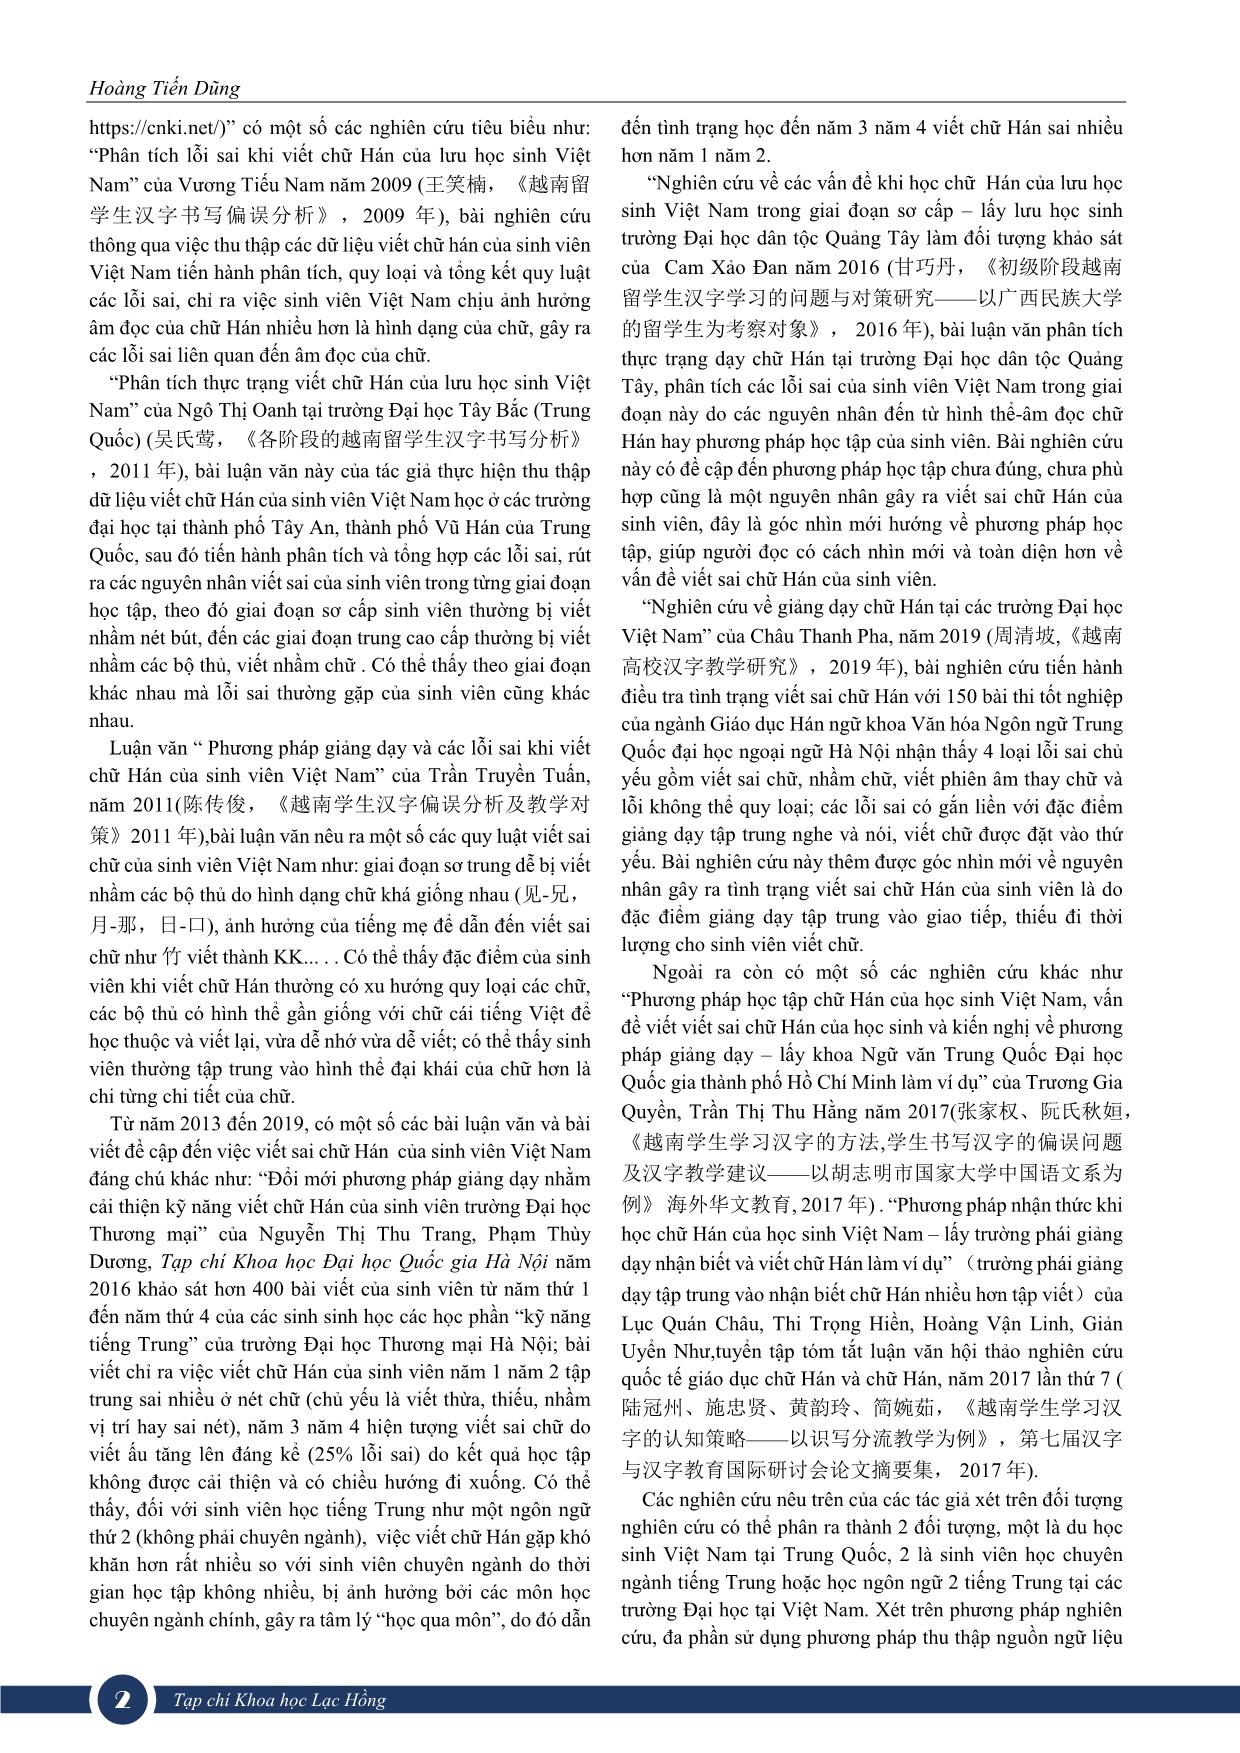 Nghiên cứu thực trạng viết sai chữ Hán của sinh viên Việt Nam - lấy sinh viên ngành ngôn ngữ Trung Quốc Đại học Lạc Hồng làm đối tượng nghiên cứu trang 2